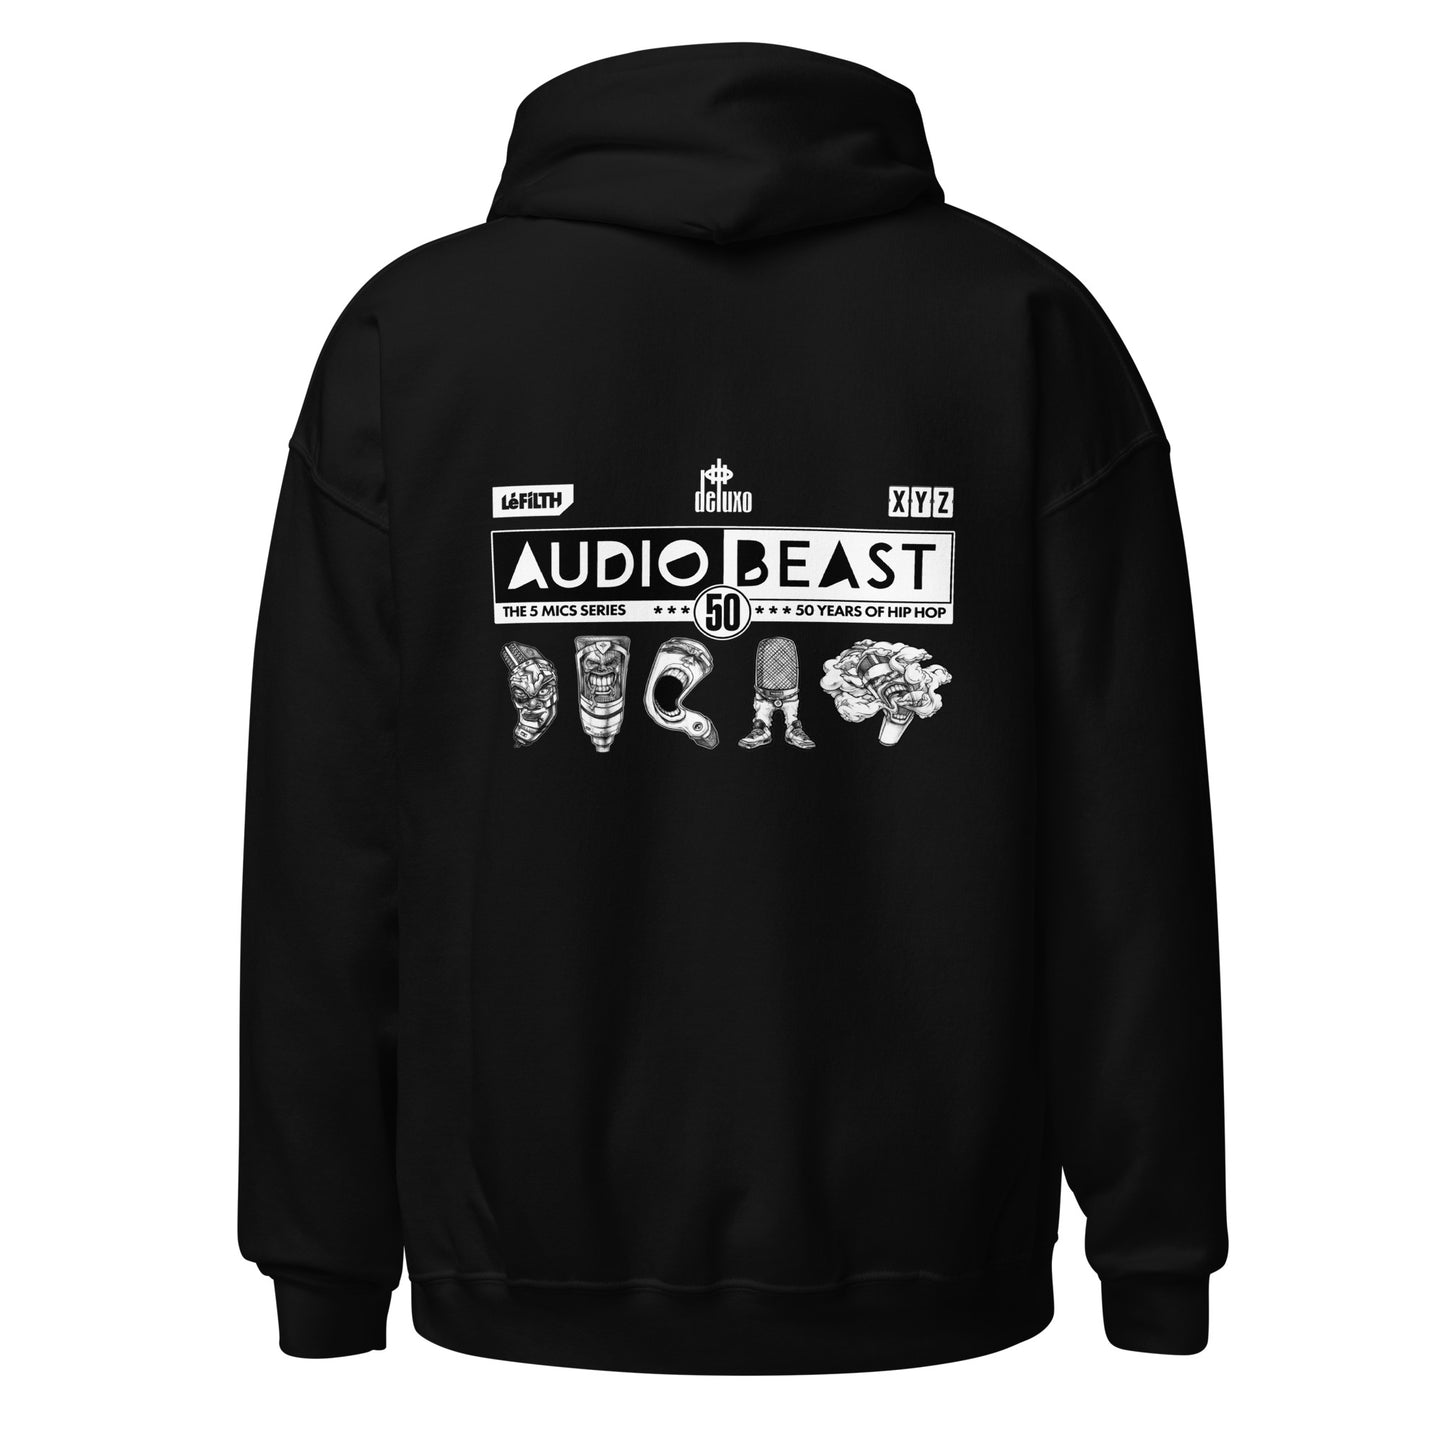 Audio Beast #4 - Grand Master Microphone - Black Hoodie (Unisex)